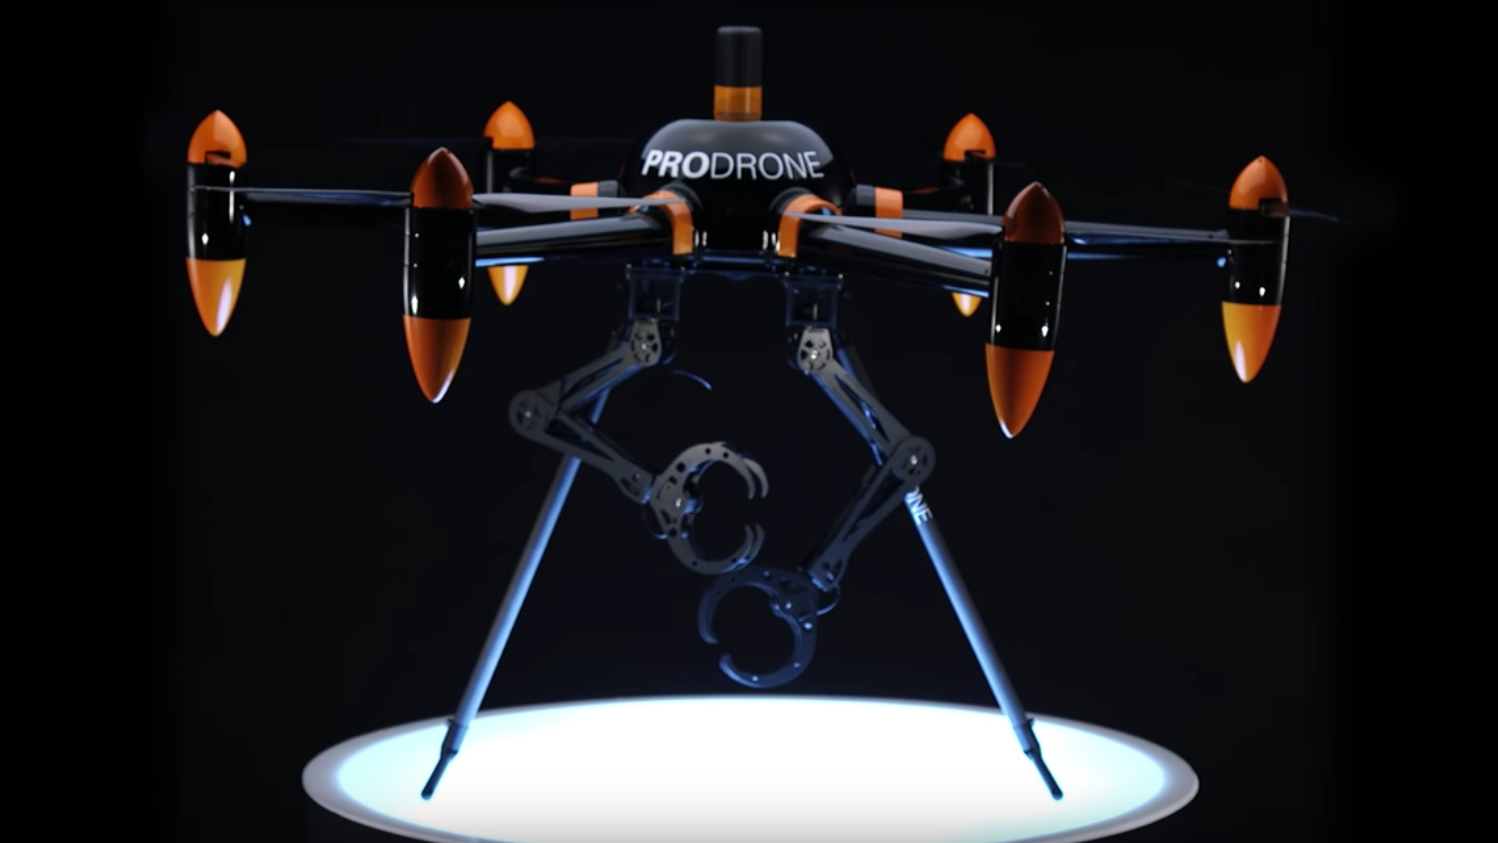 Летающие роботы примеры